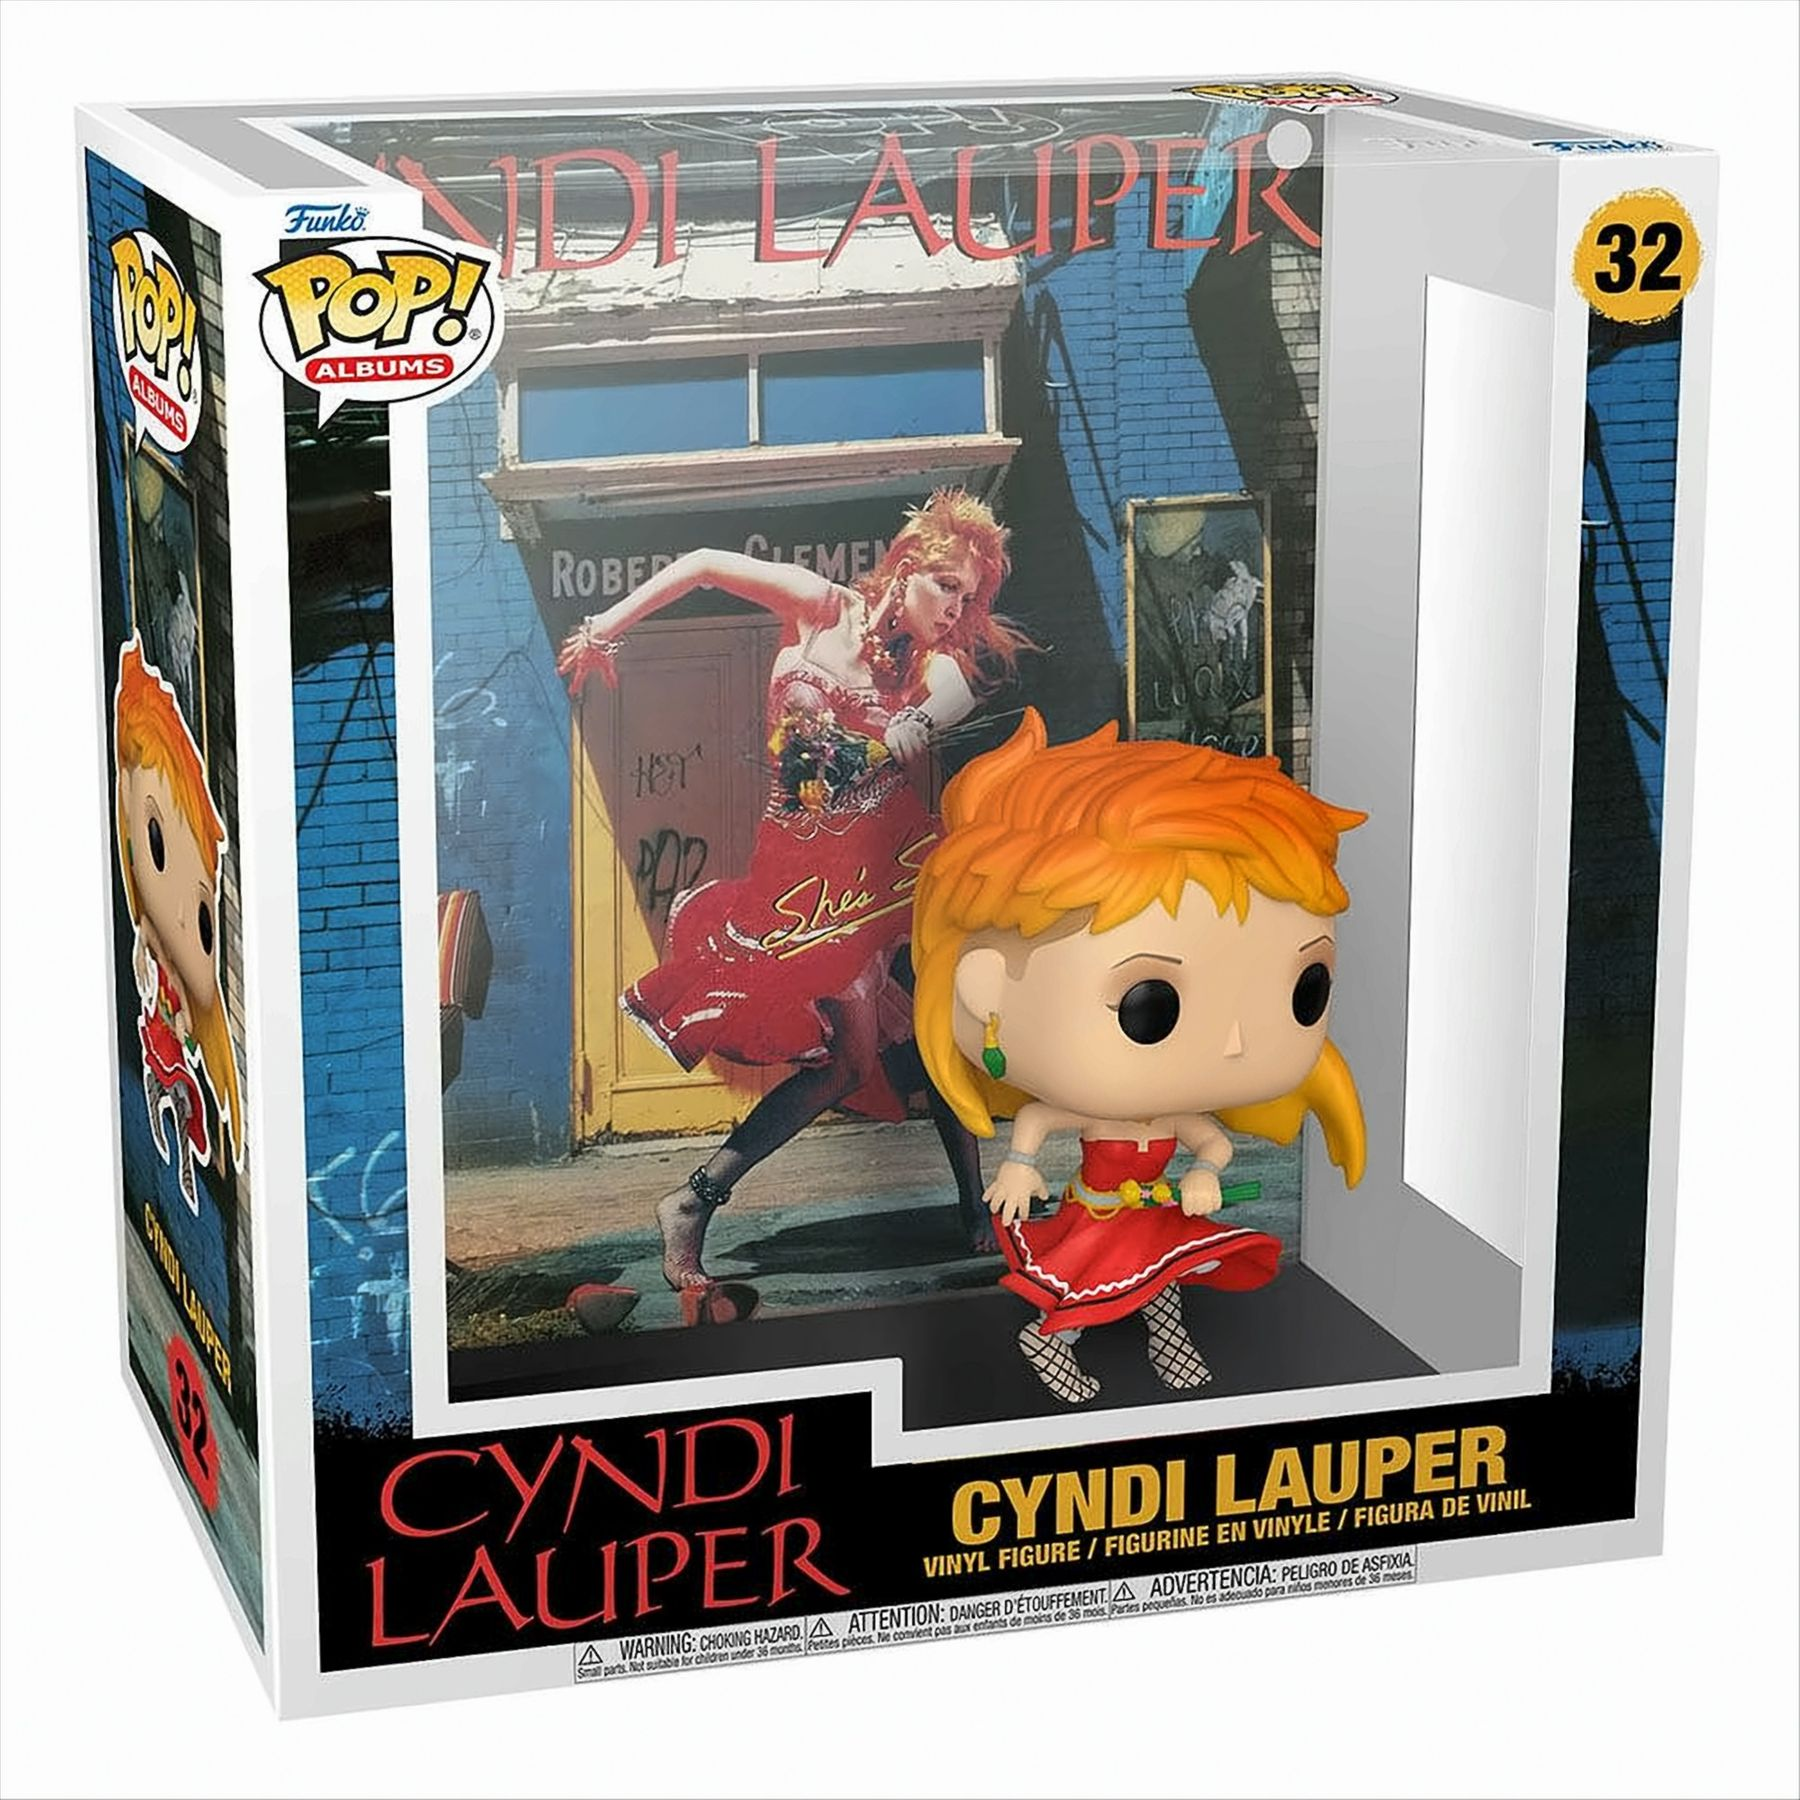 Cyndi - So POP - She´s - Lauper Albums Unusual